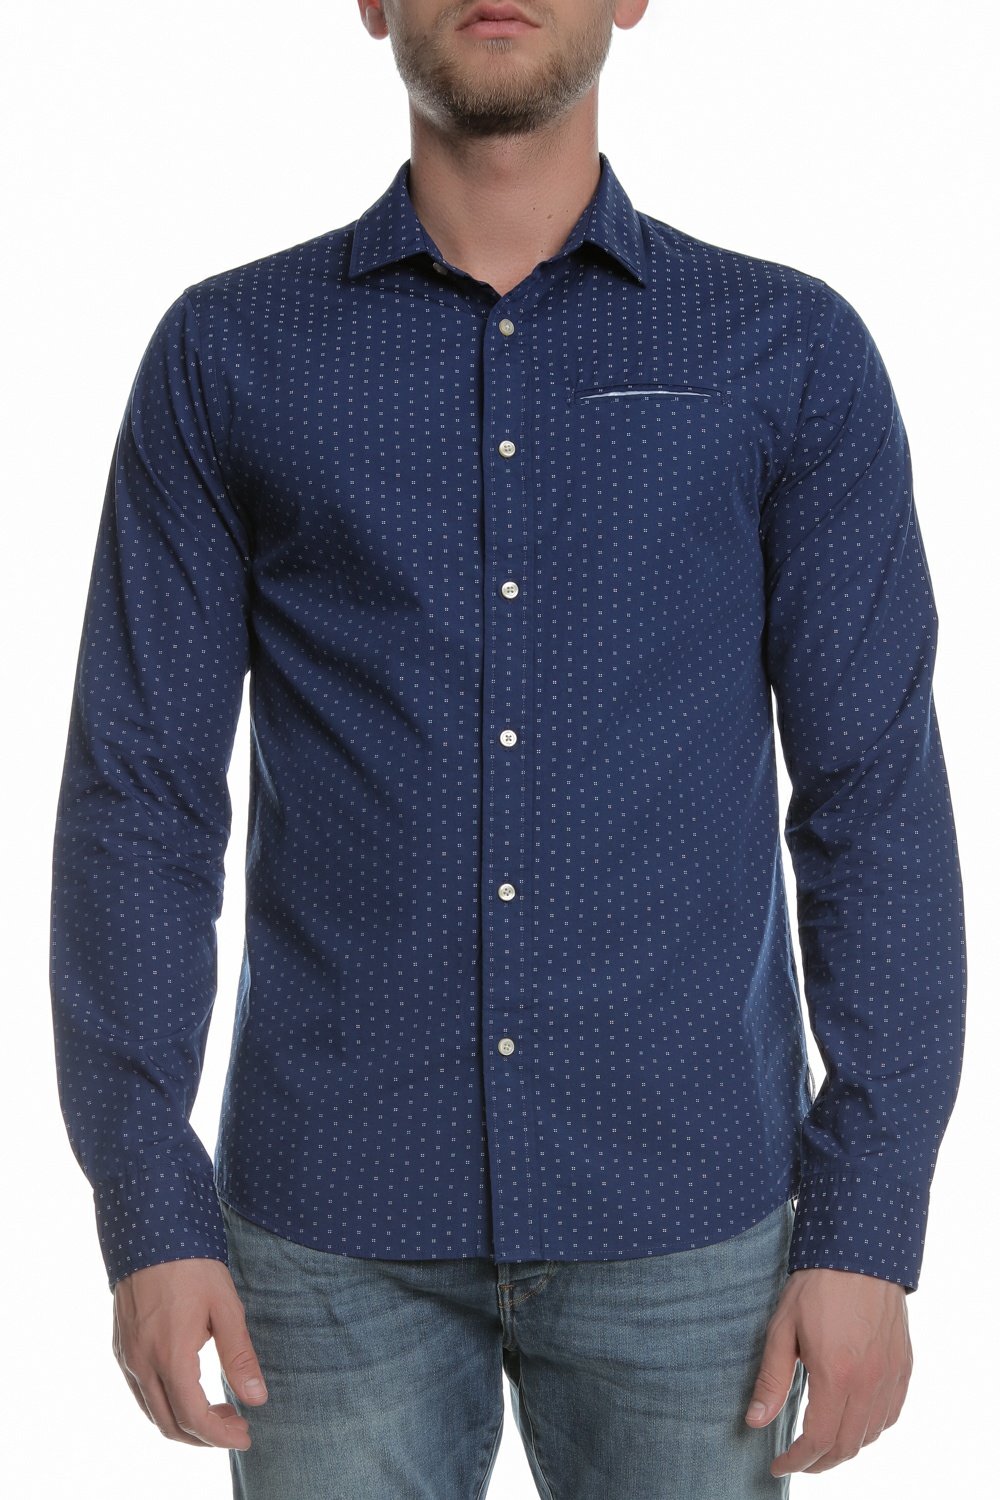 Ανδρικά/Ρούχα/Πουκάμισα/Μακρυμάνικα SCOTCH & SODA - Ανδρικό πουκάμισο SCOTCH & SODA μπλε